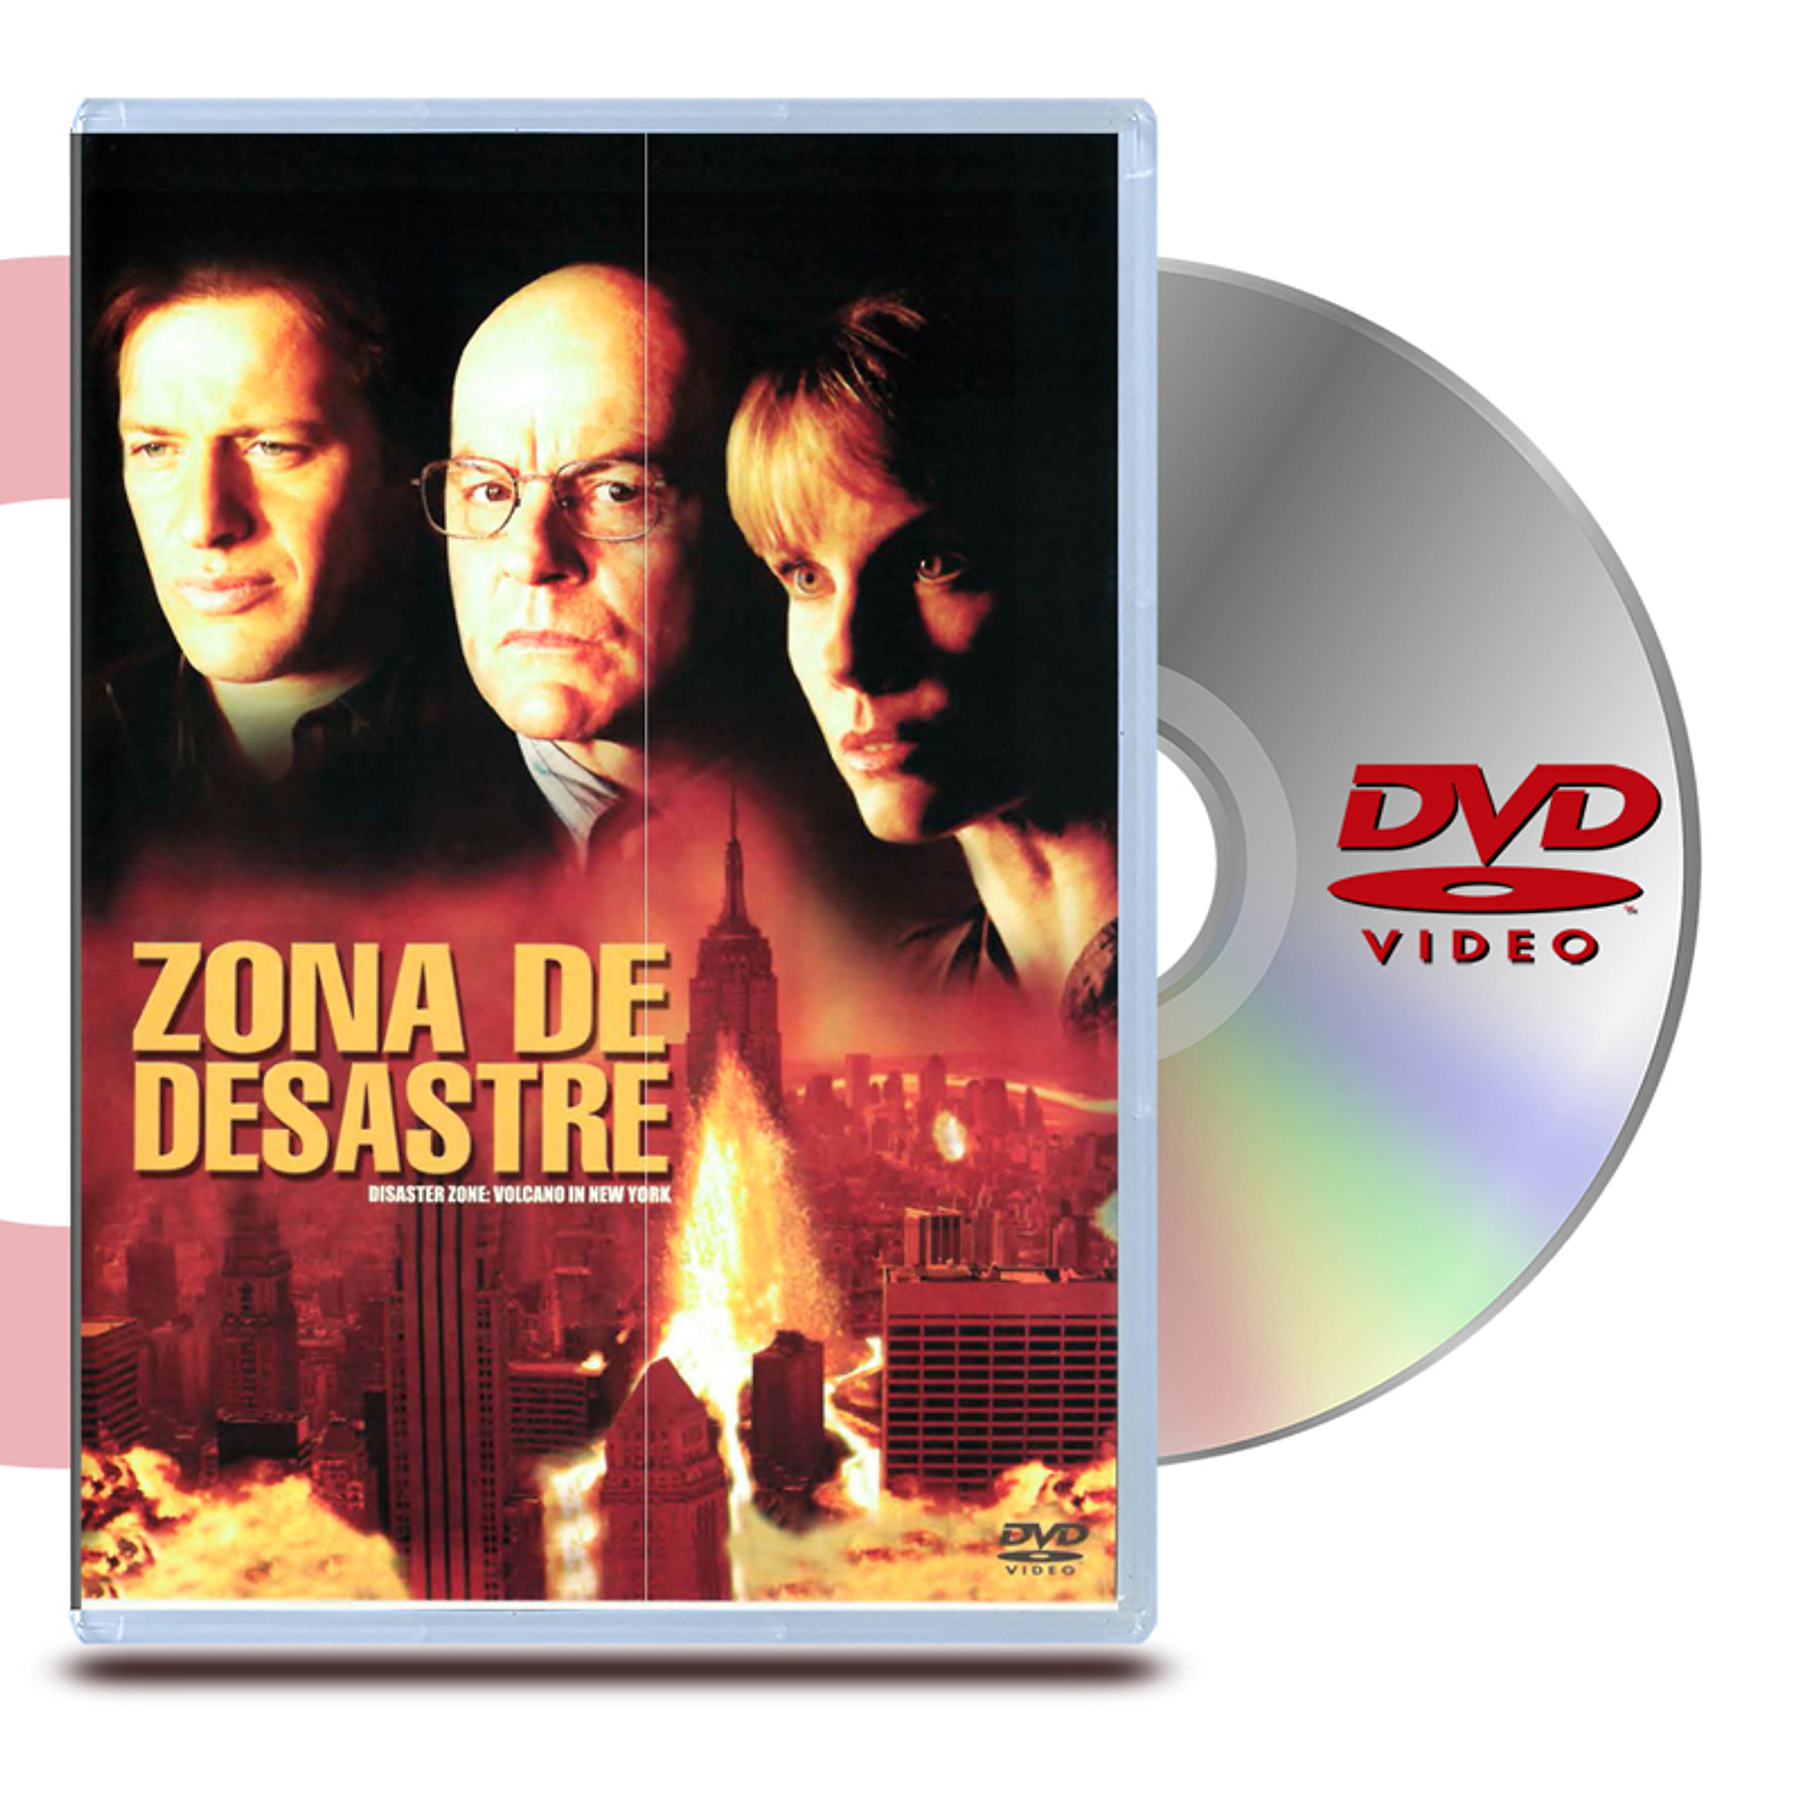 DVD ZONA DE DESASTRE